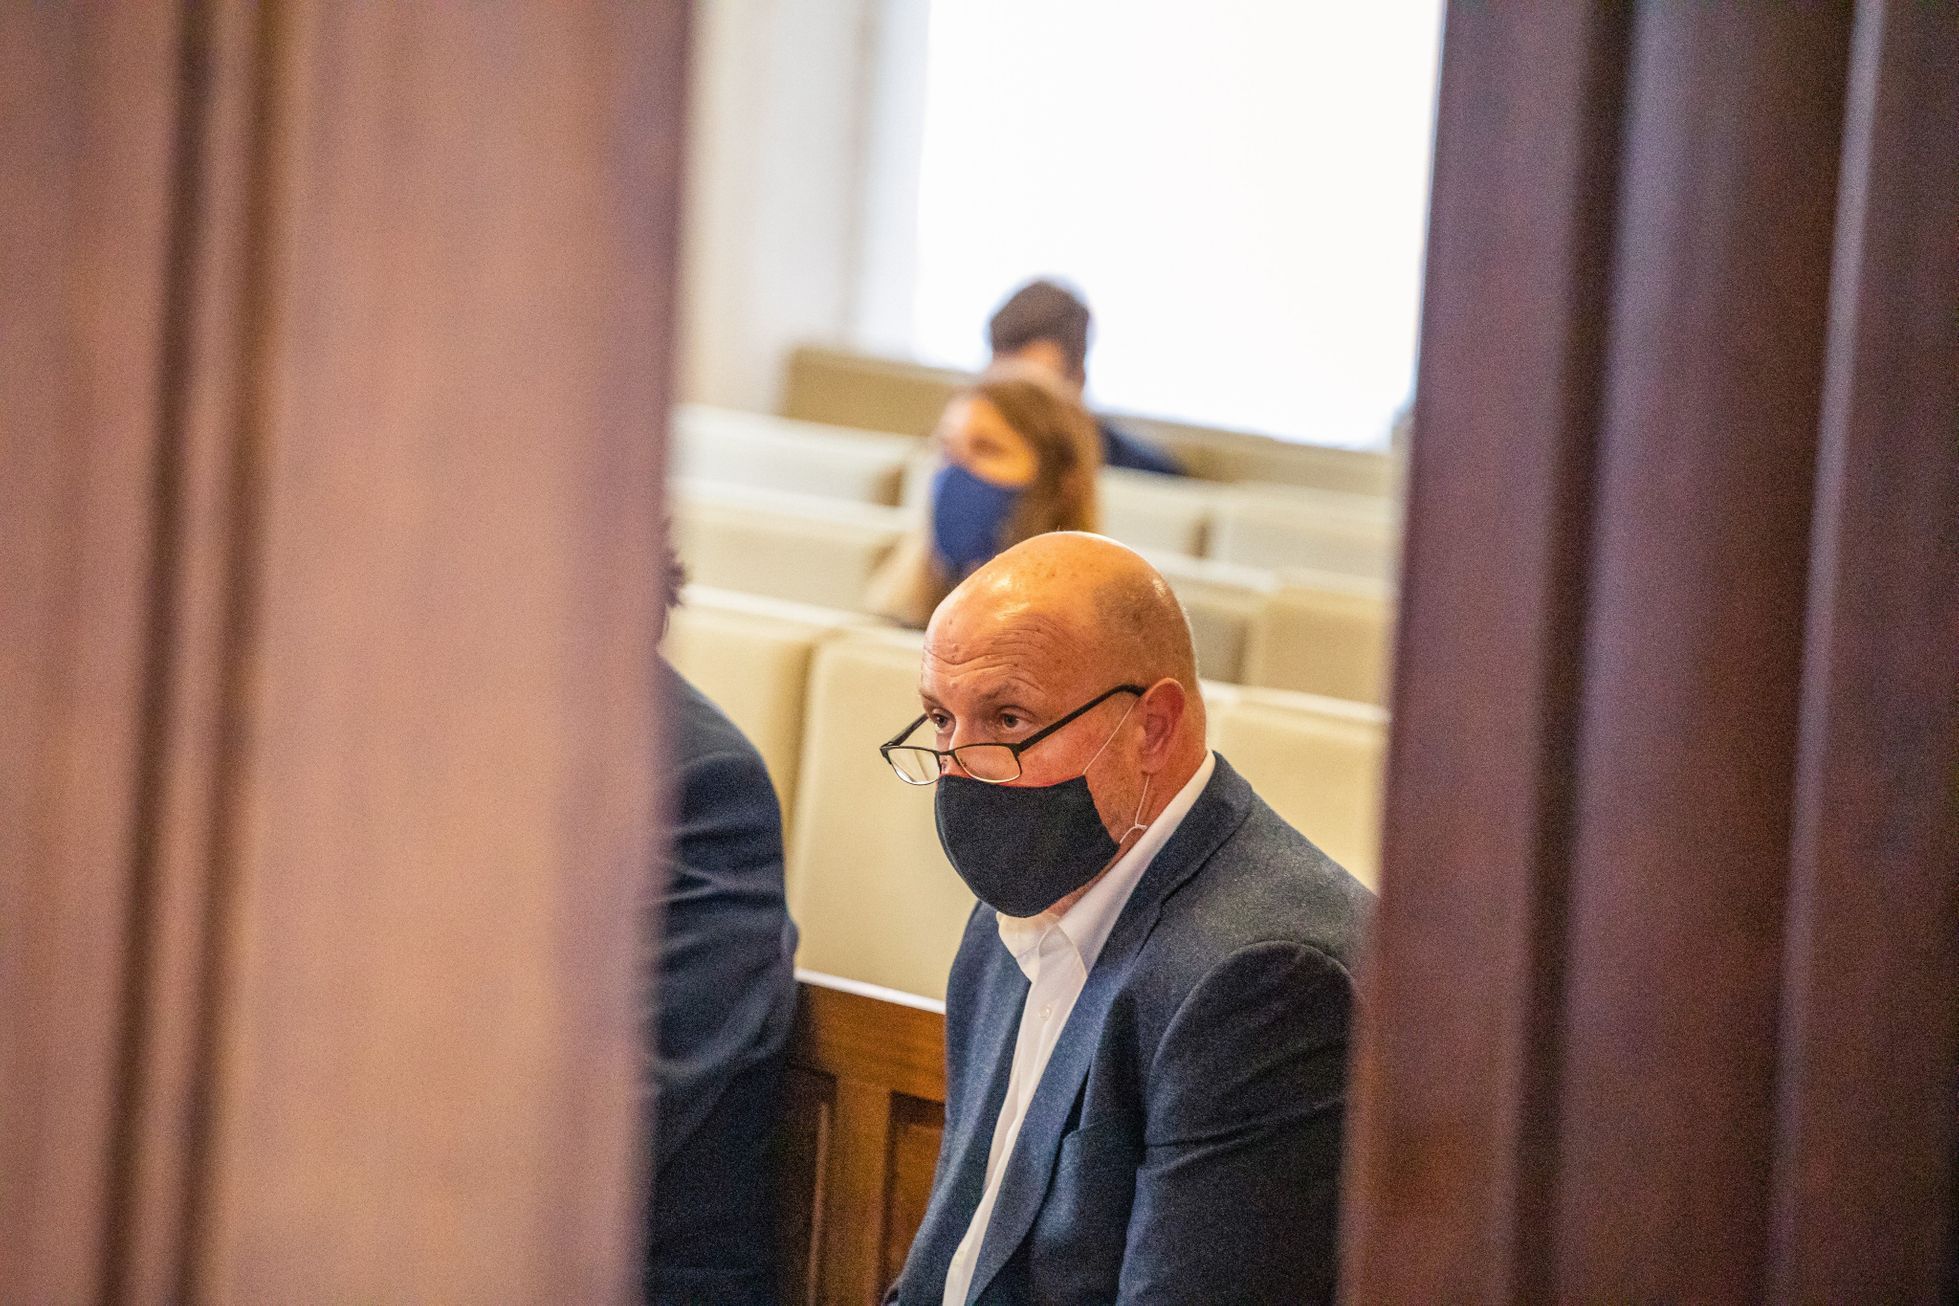 Politik ODS Jiří Hos se u brněnského soudu hájí, že společně s členy ANO žádné zakázky nemanipuloval.